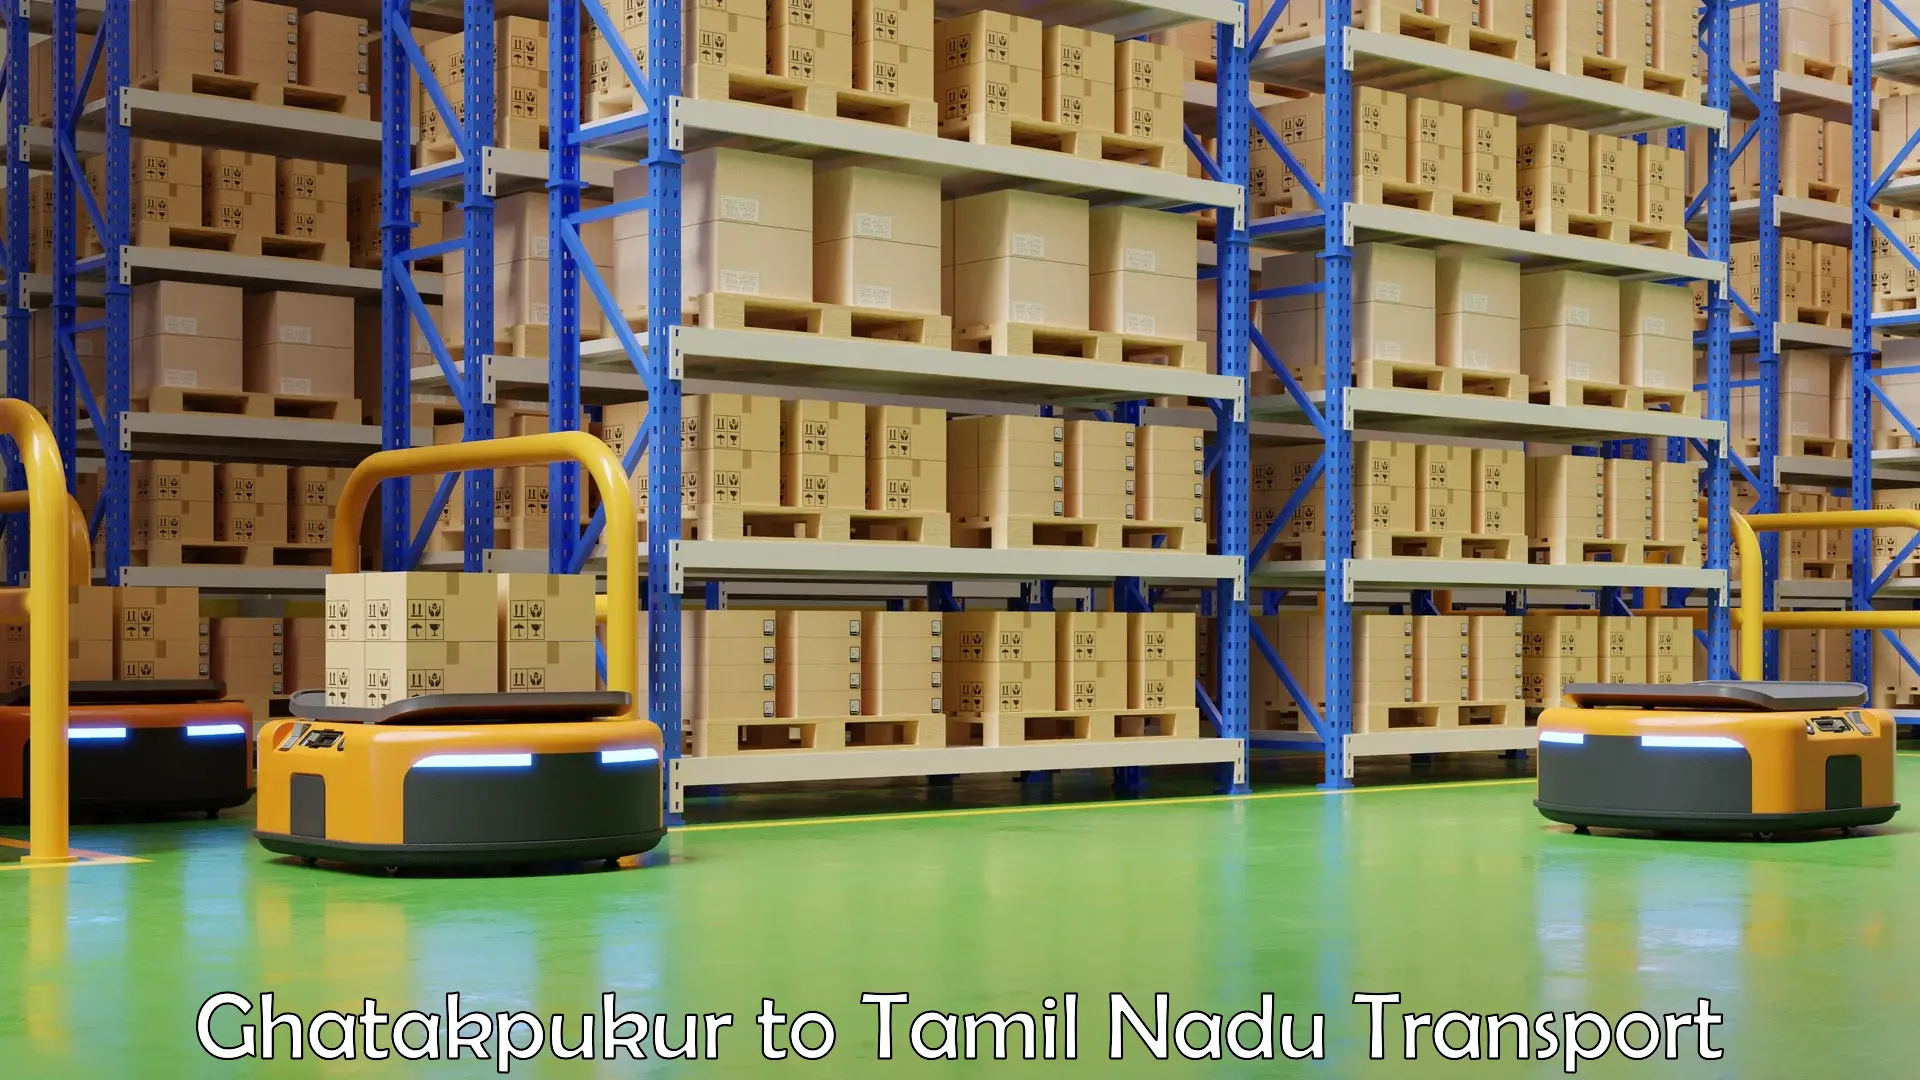 Online transport booking Ghatakpukur to Tamil Nadu